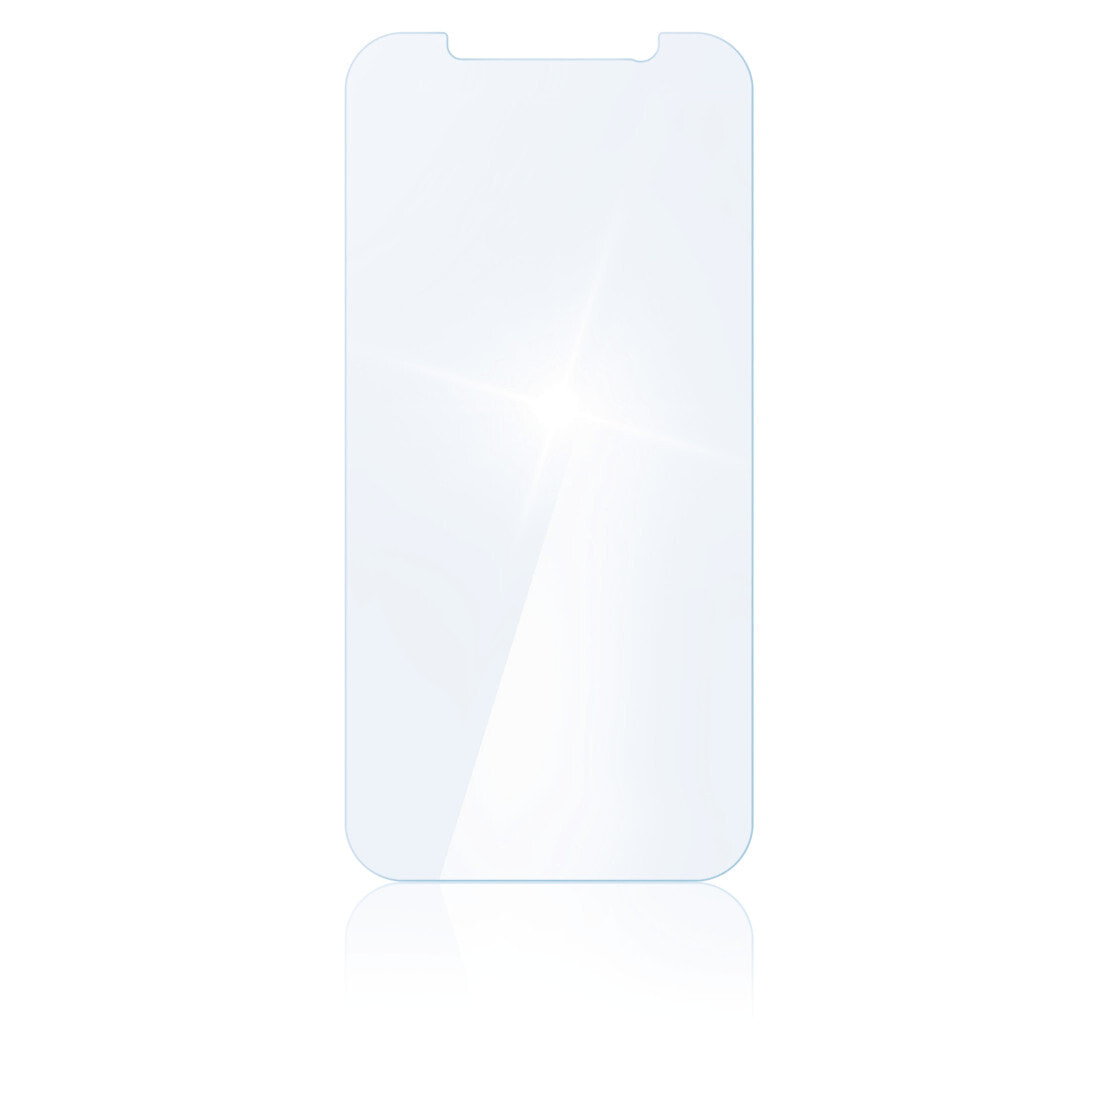 Hama 00188678 защитная пленка / стекло Прозрачная защитная пленка Мобильный телефон / смартфон Apple 1 шт